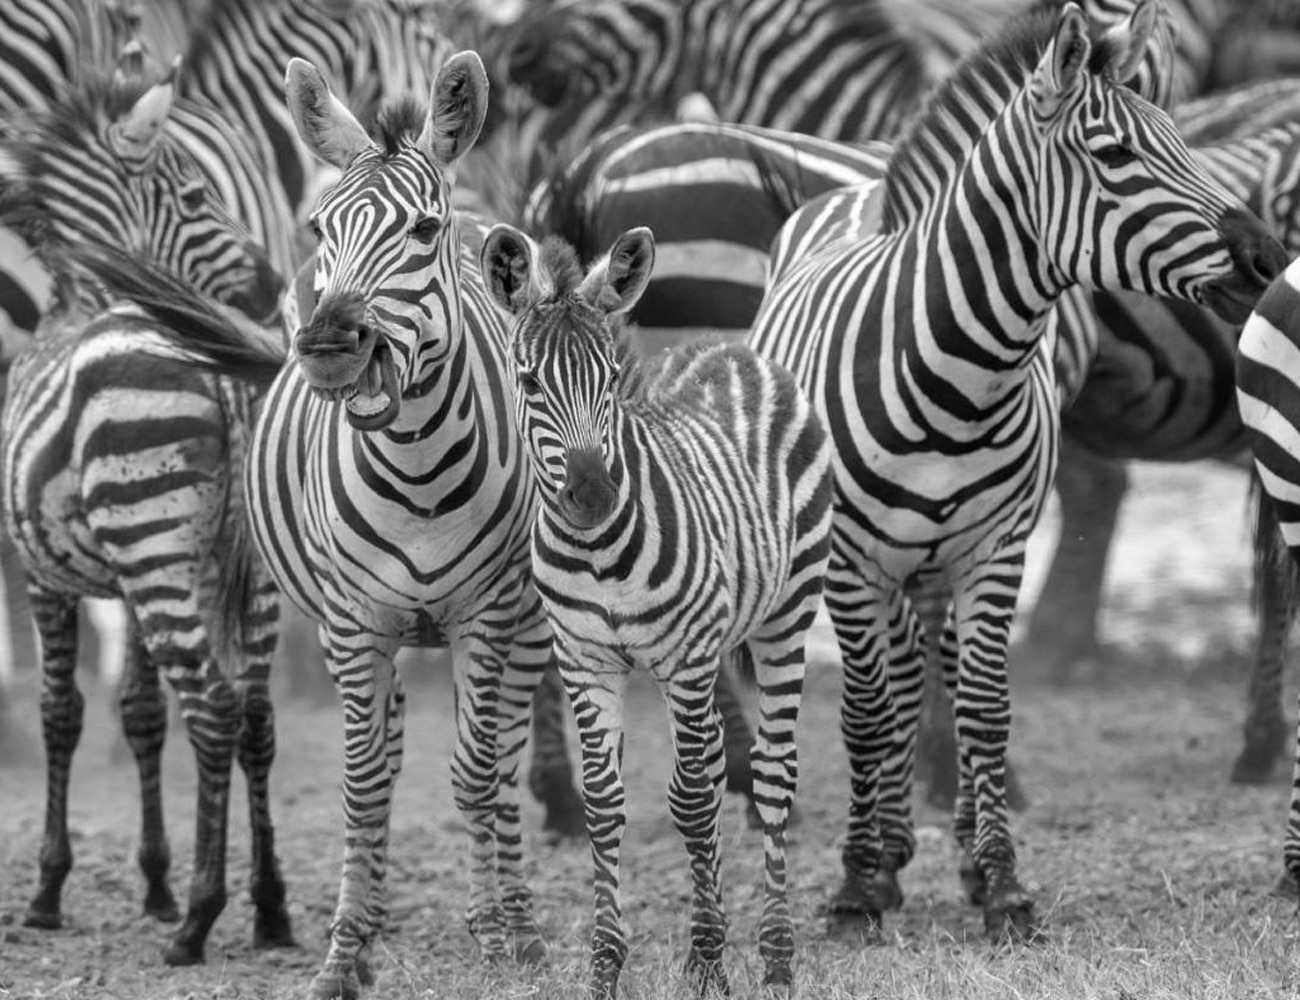 Wildlife at the Serengeti